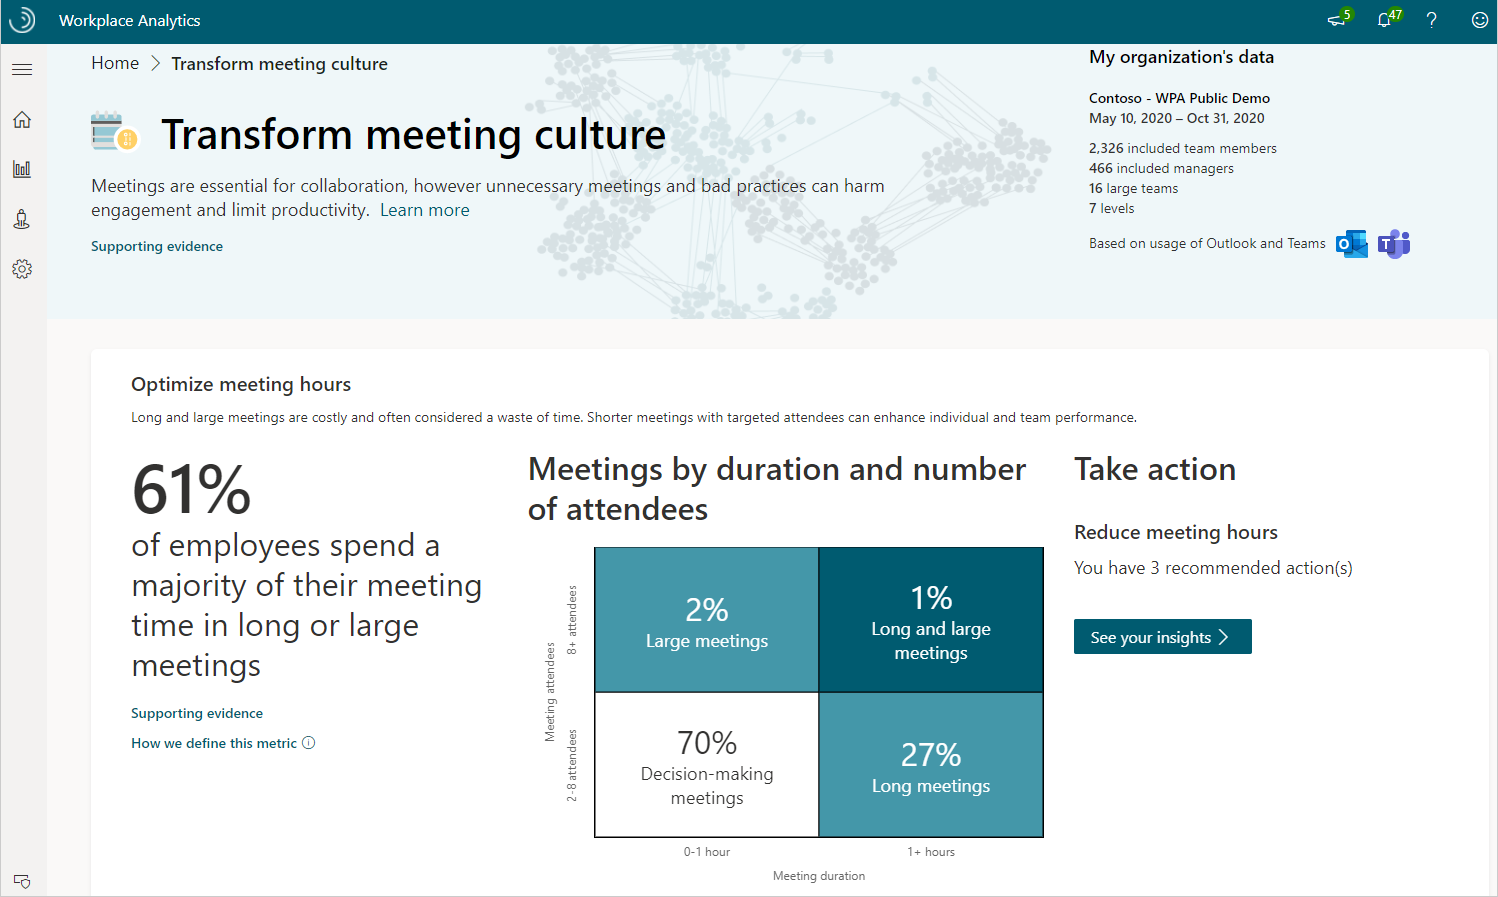 Transforme a página de cultura de reunião.